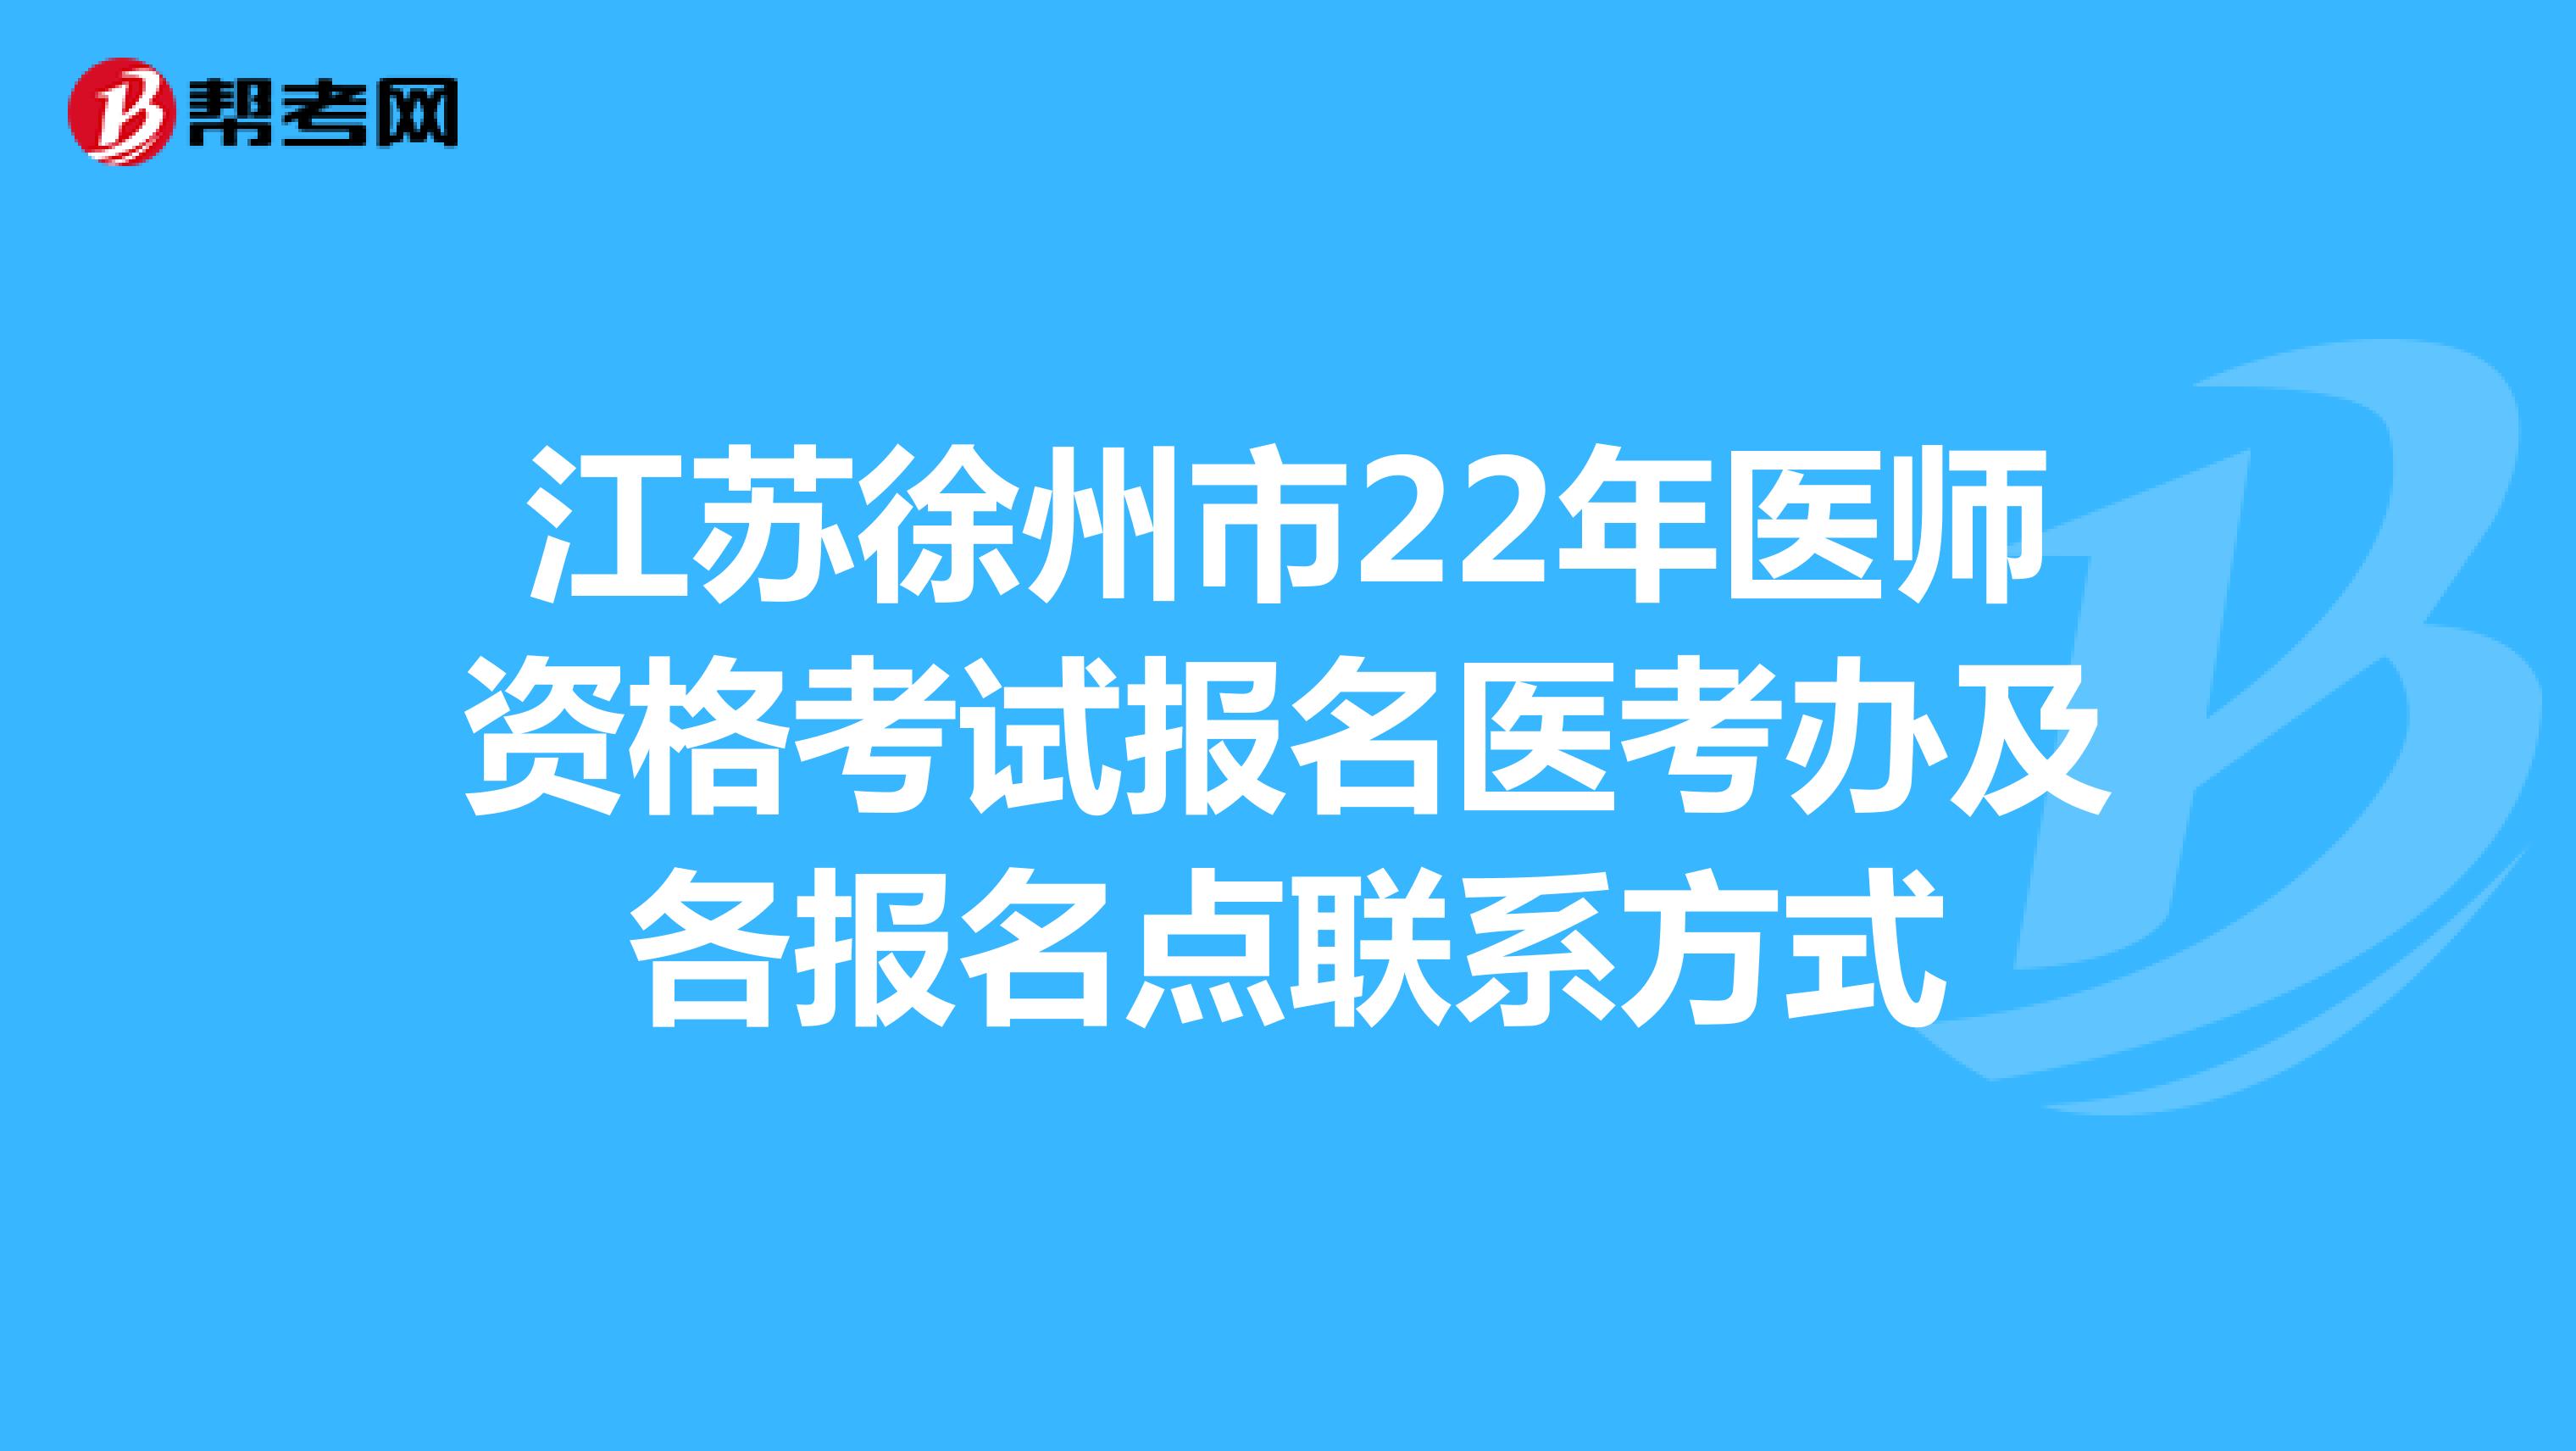 江苏徐州市22年医师资格考试报名医考办及各报名点联系方式